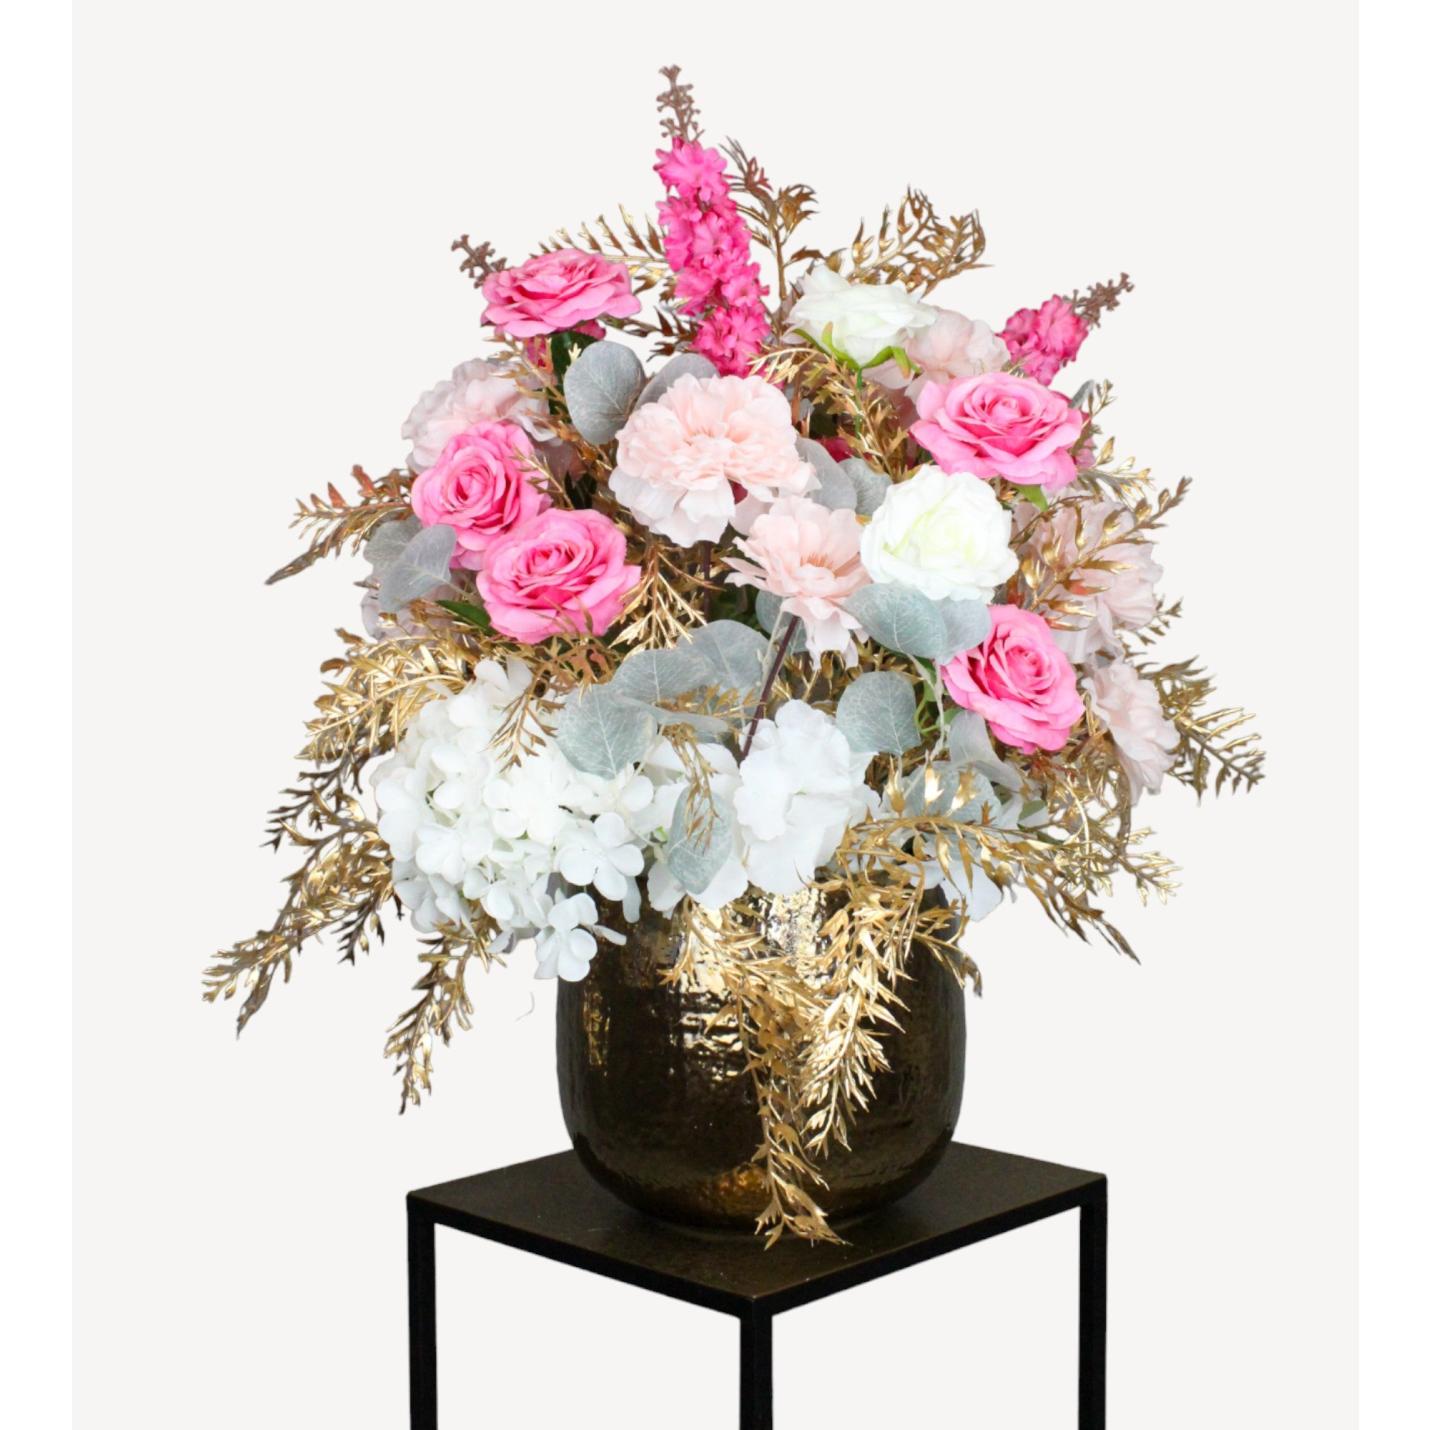 Breng stijl en elegantie in elke ruimte met onze zorgvuldig samengestelde kunst bloemballen van zijde. Deze luxueuze schikking van roze en witte zijden bloemen, geplaatst in een opvallende gouden vaas, biedt een tijdloze decoratie die geen onderhoud vereist. Perfect voor iedereen die op zoek is naar een duurzaam alternatief voor verse bloemen, zonder in te leveren op de schoonheid van een bloemstuk. Onze nepbloemen zijn ideaal voor thuisdecoratie, kantooromgevingen of als een prachtig geschenk